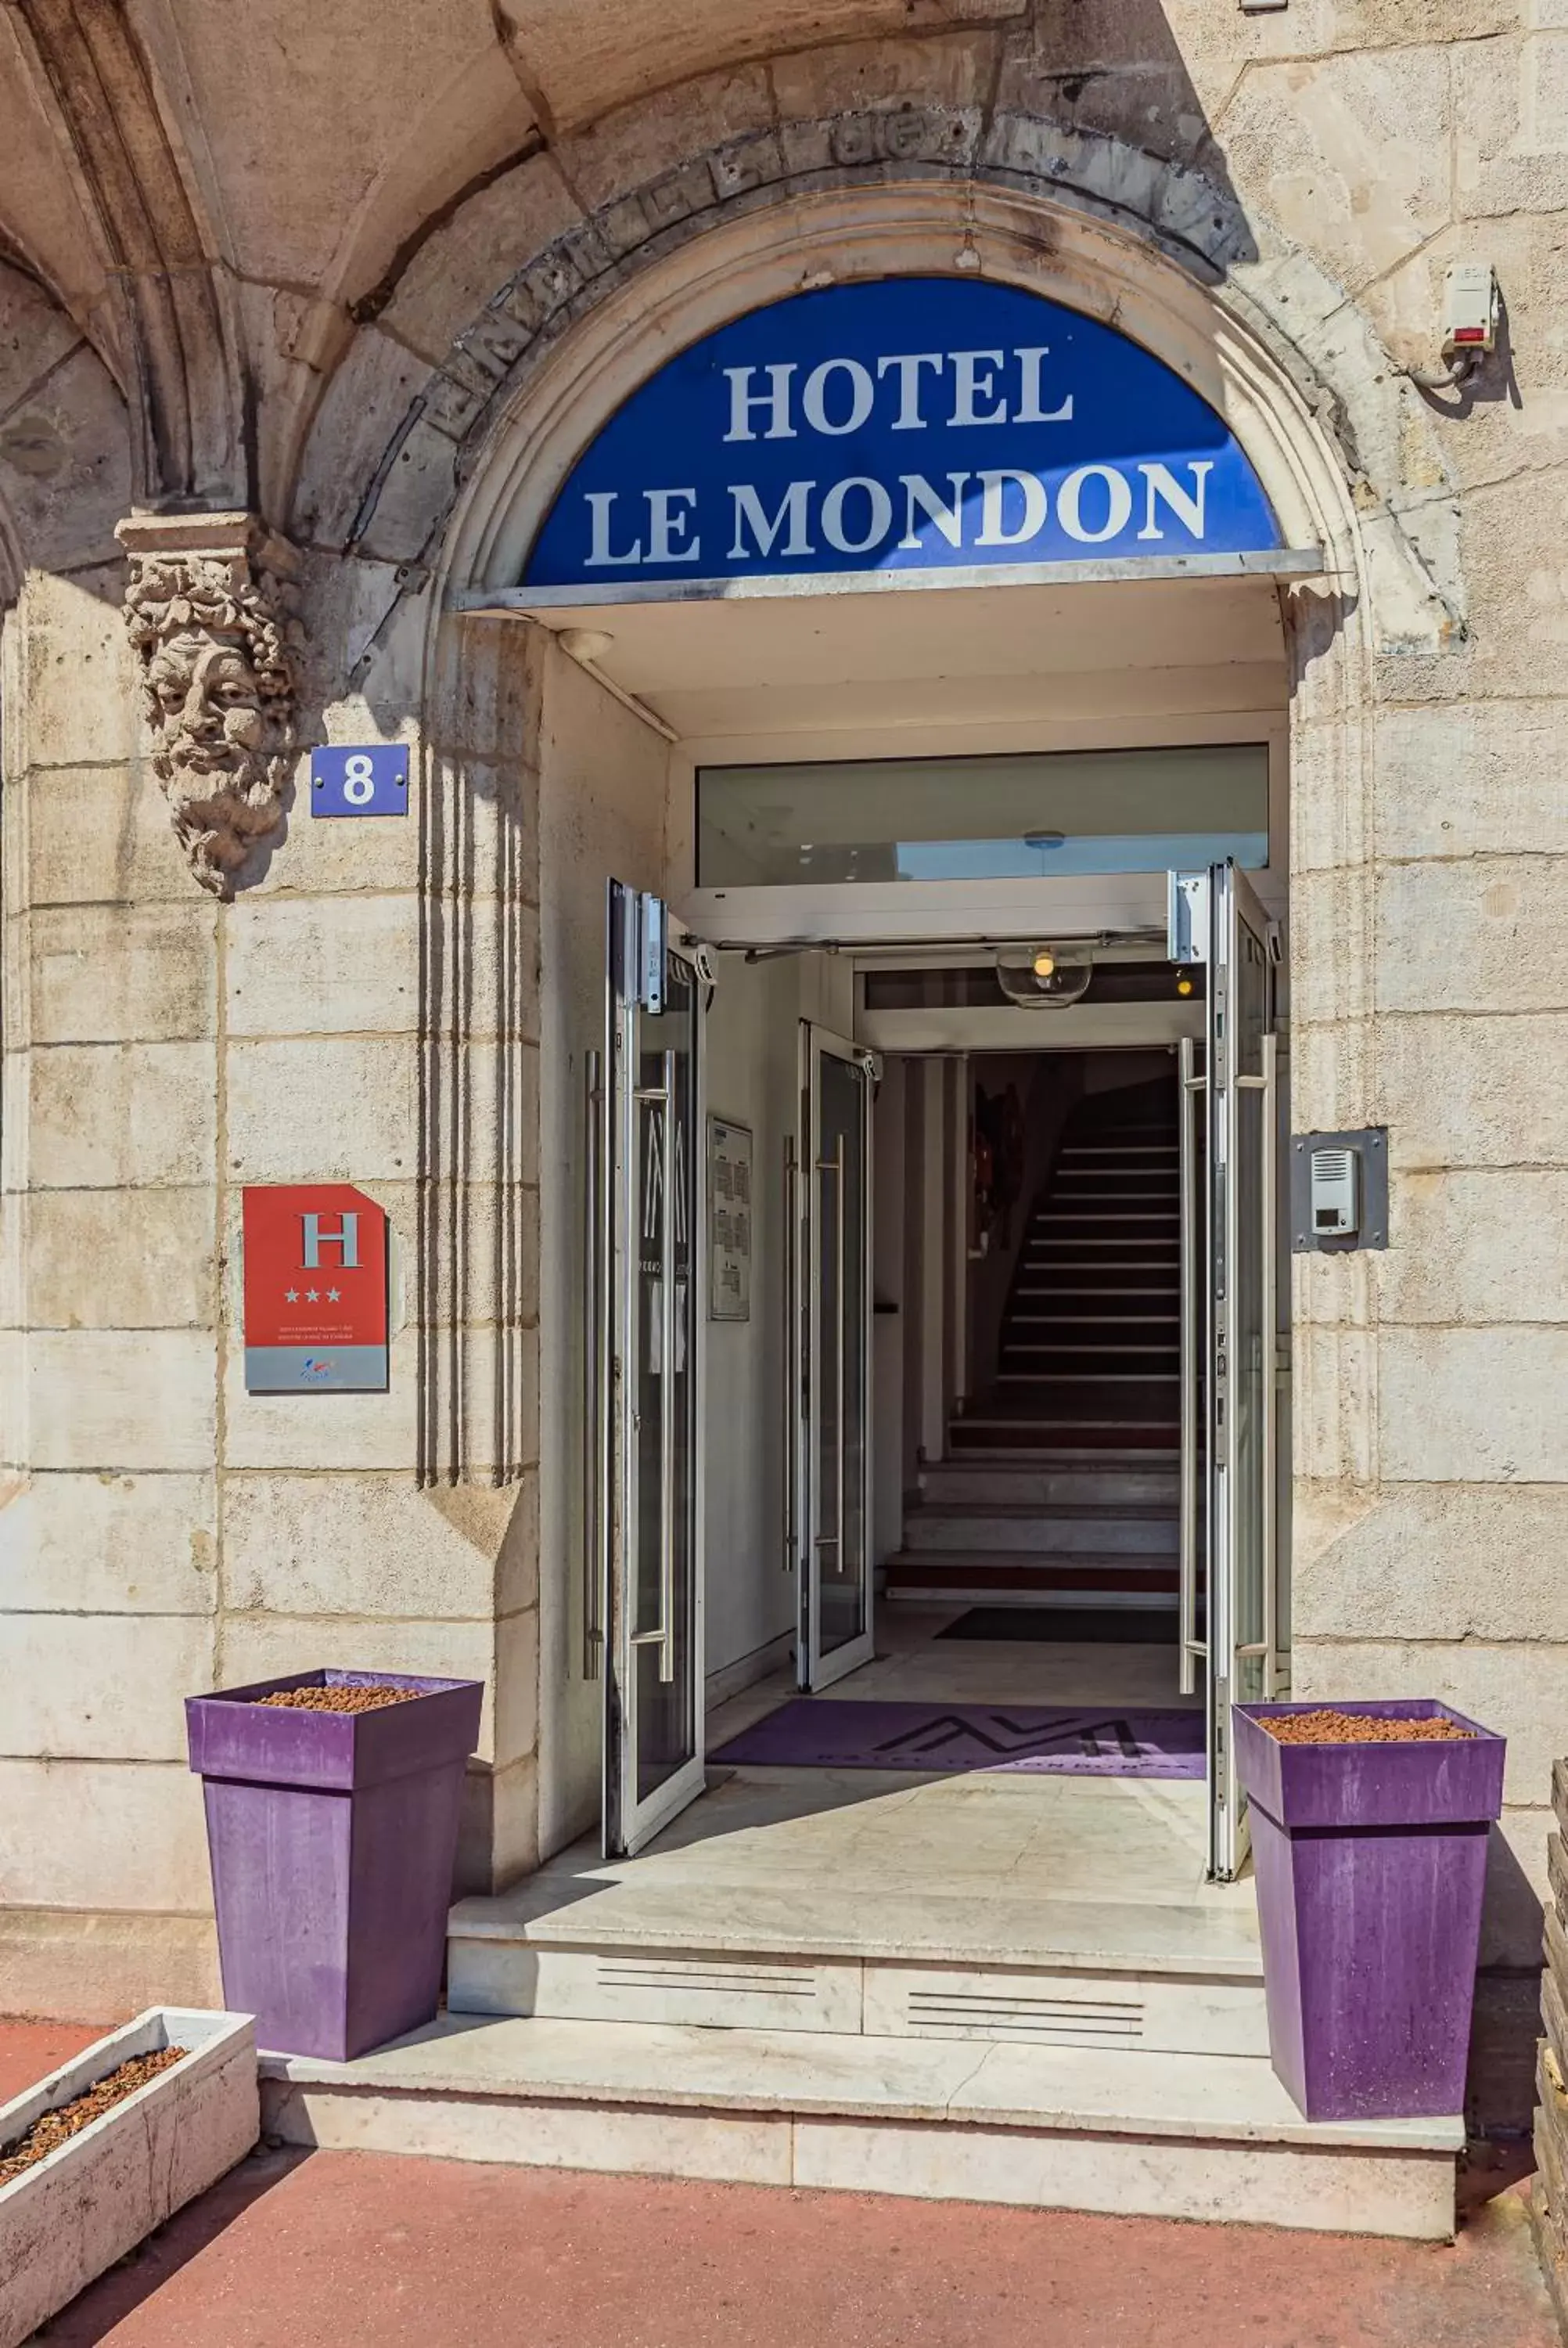 Property building in Hôtel Le Mondon